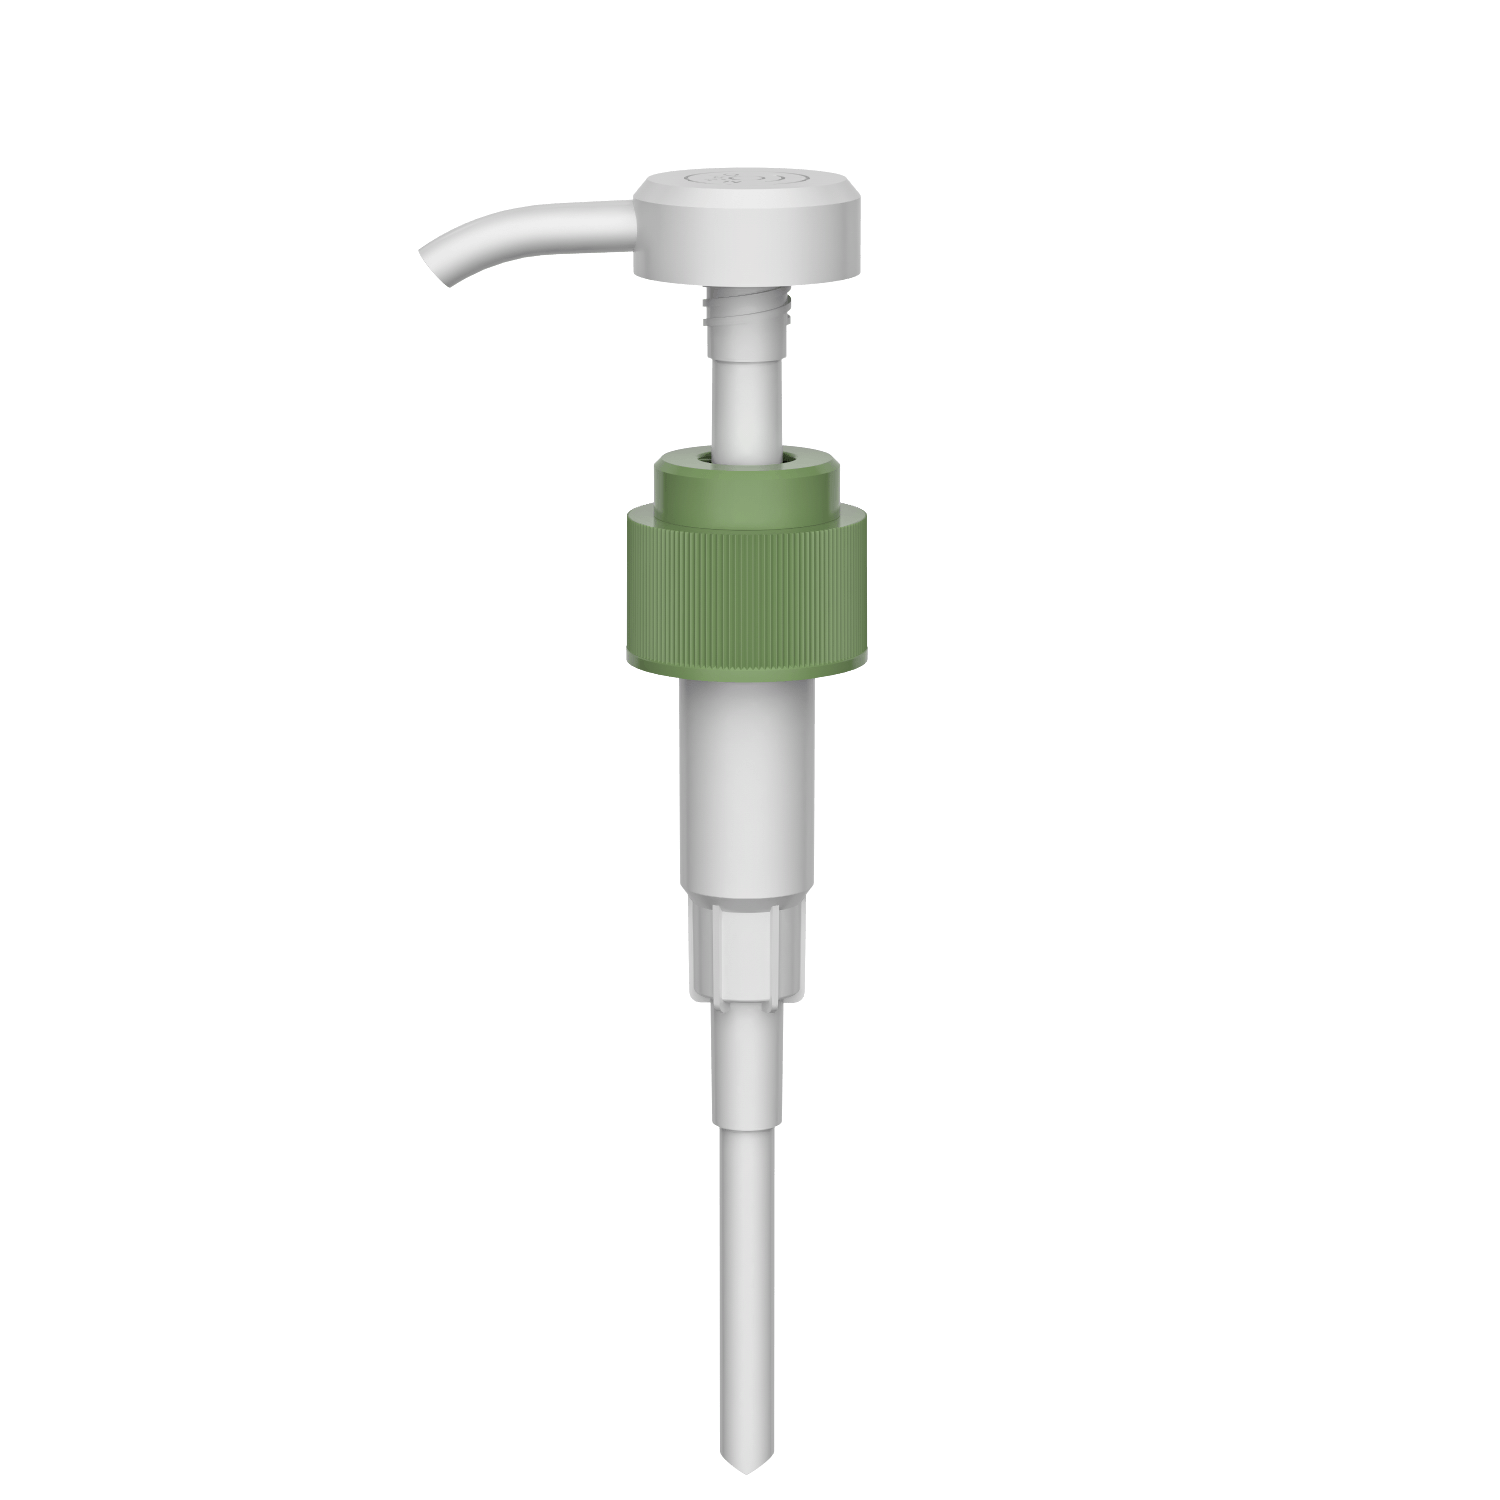 HD-608A 28/410 liquid high dosage washing shampoo output dispenser 3.5-4.0CC lotion pump